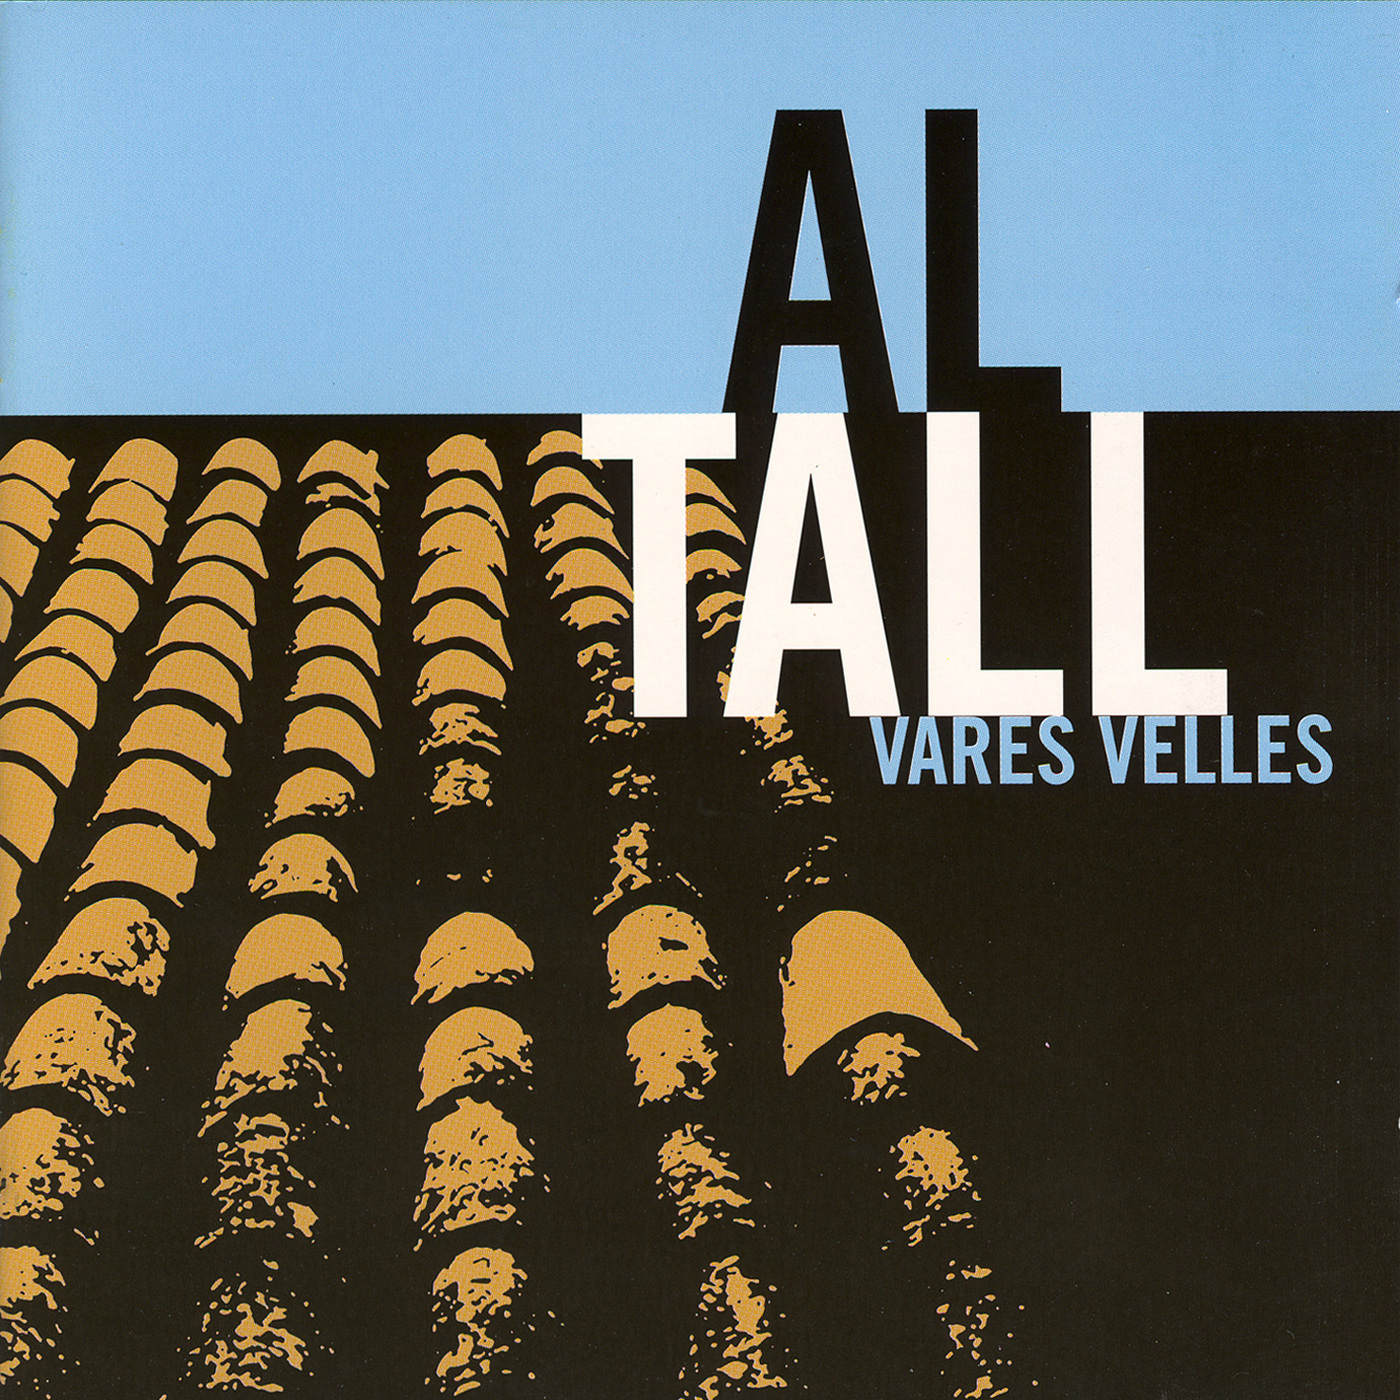 Al Tall - Vares velles | musica en valencià